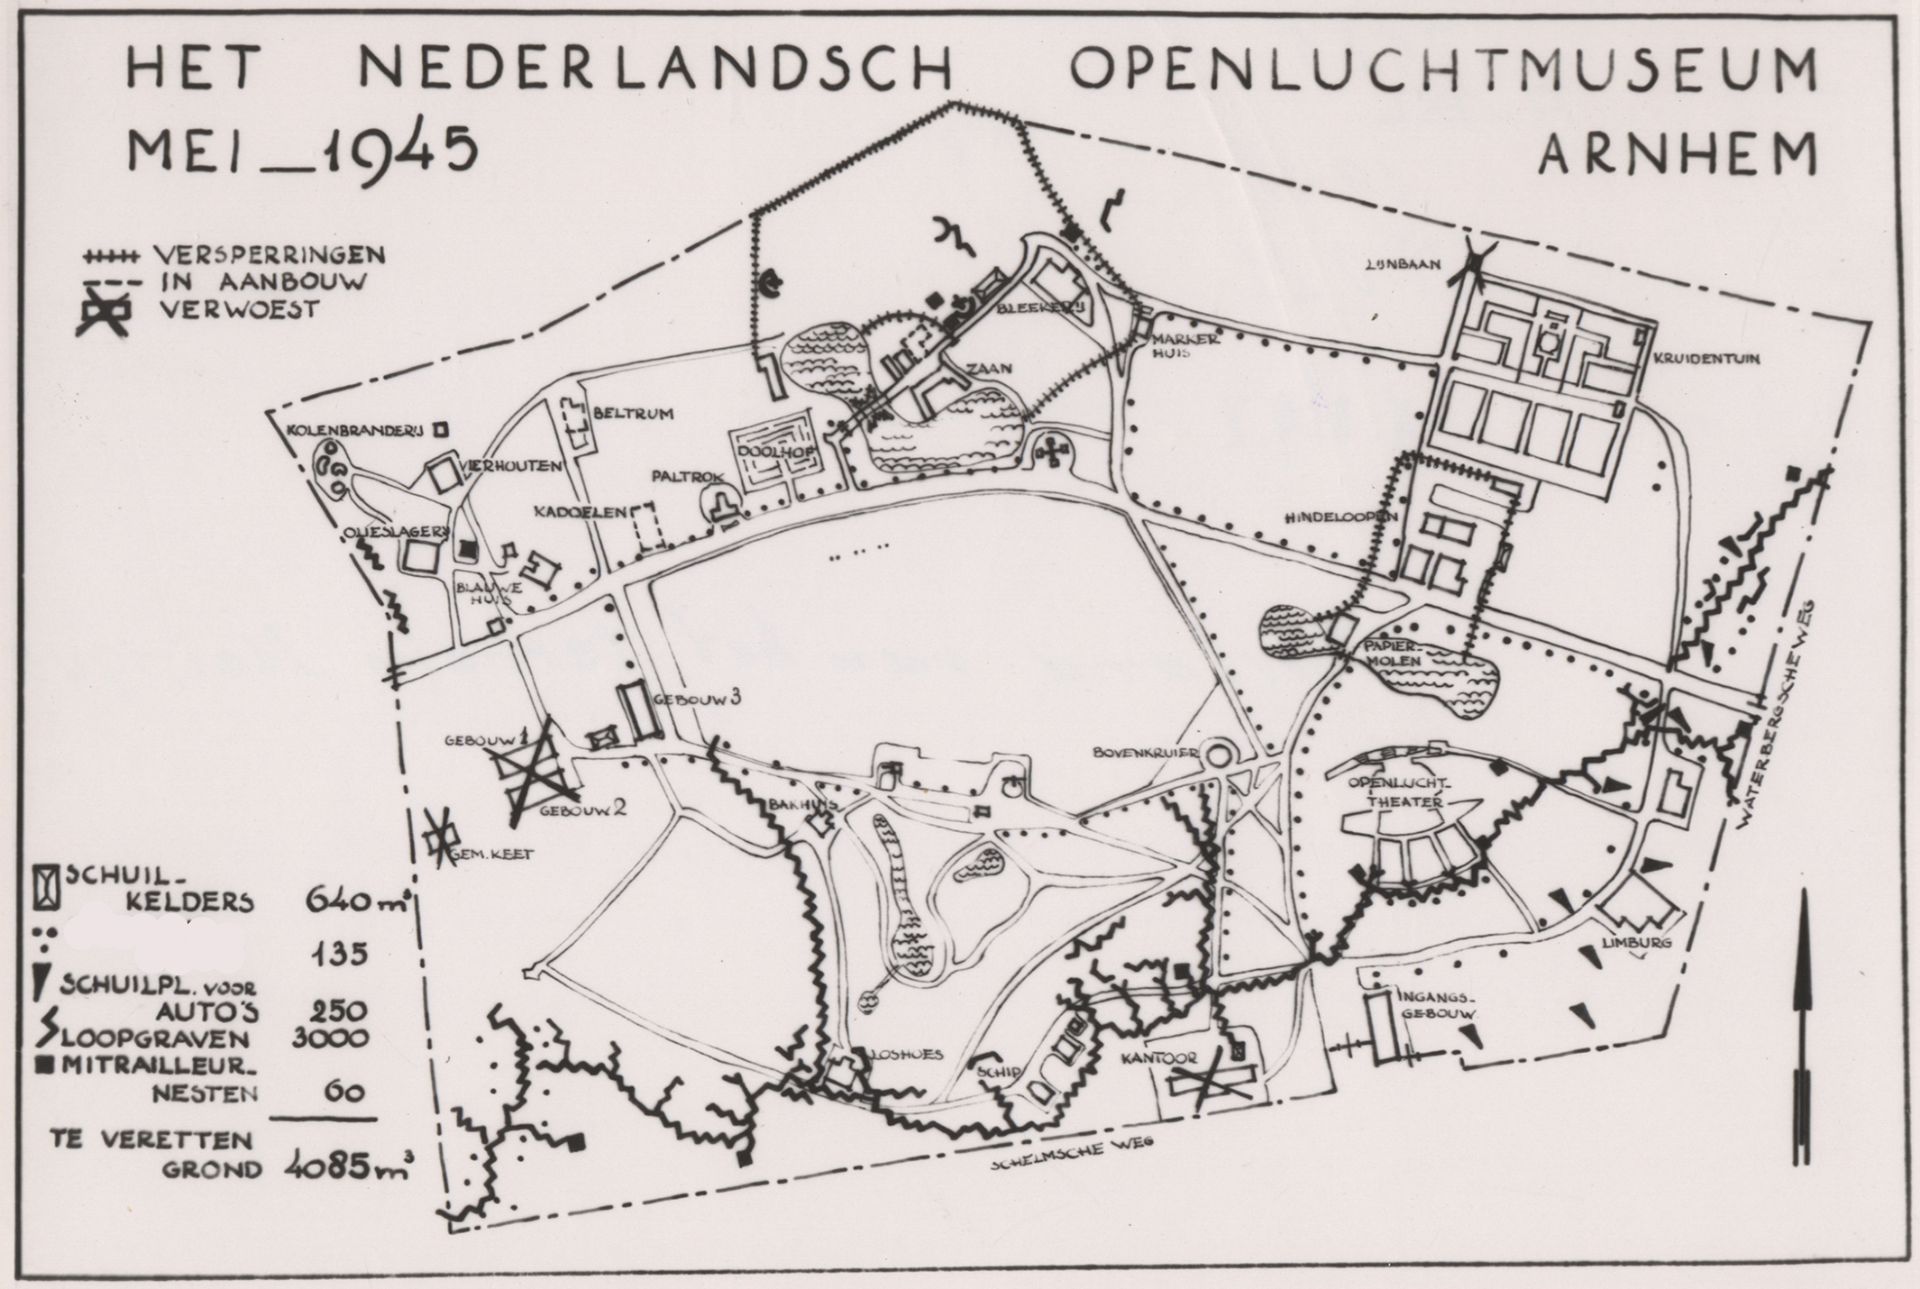 Kaart van het Openluchtmuseum uit mei 1945.